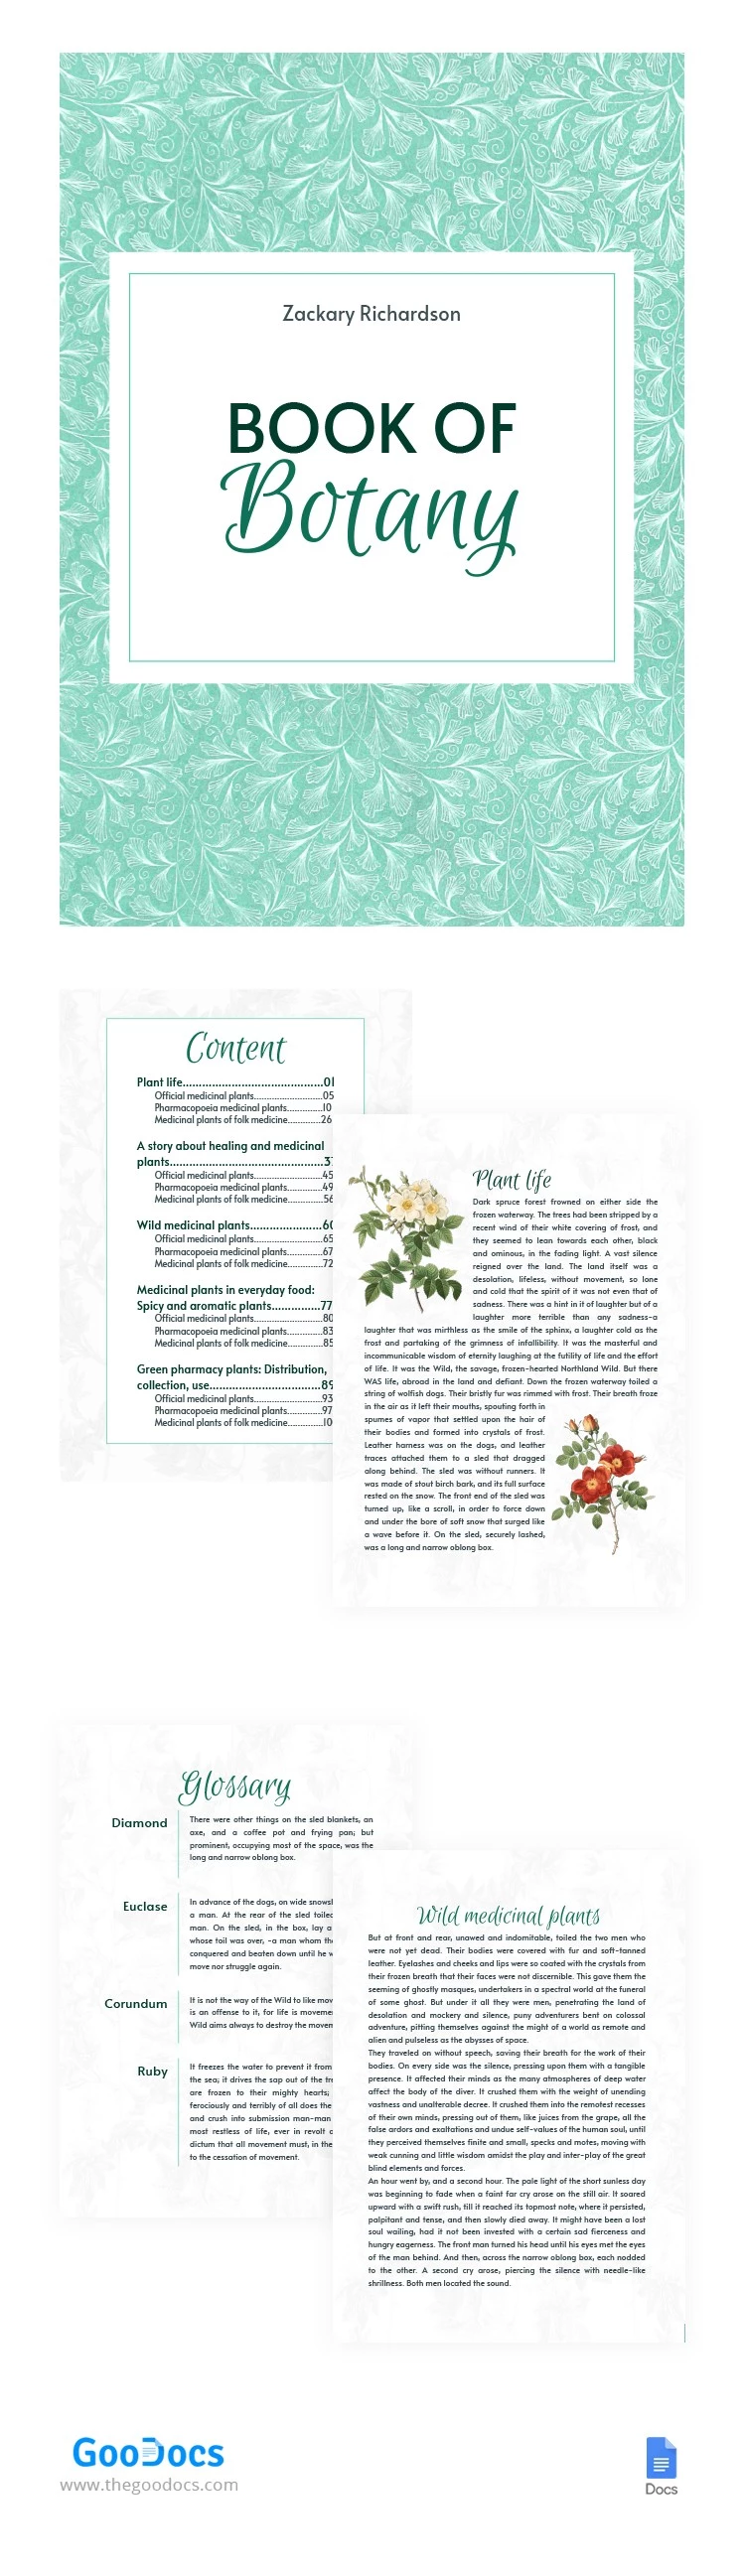 Couverture de livre florale et botanique - free Google Docs Template - 10065057